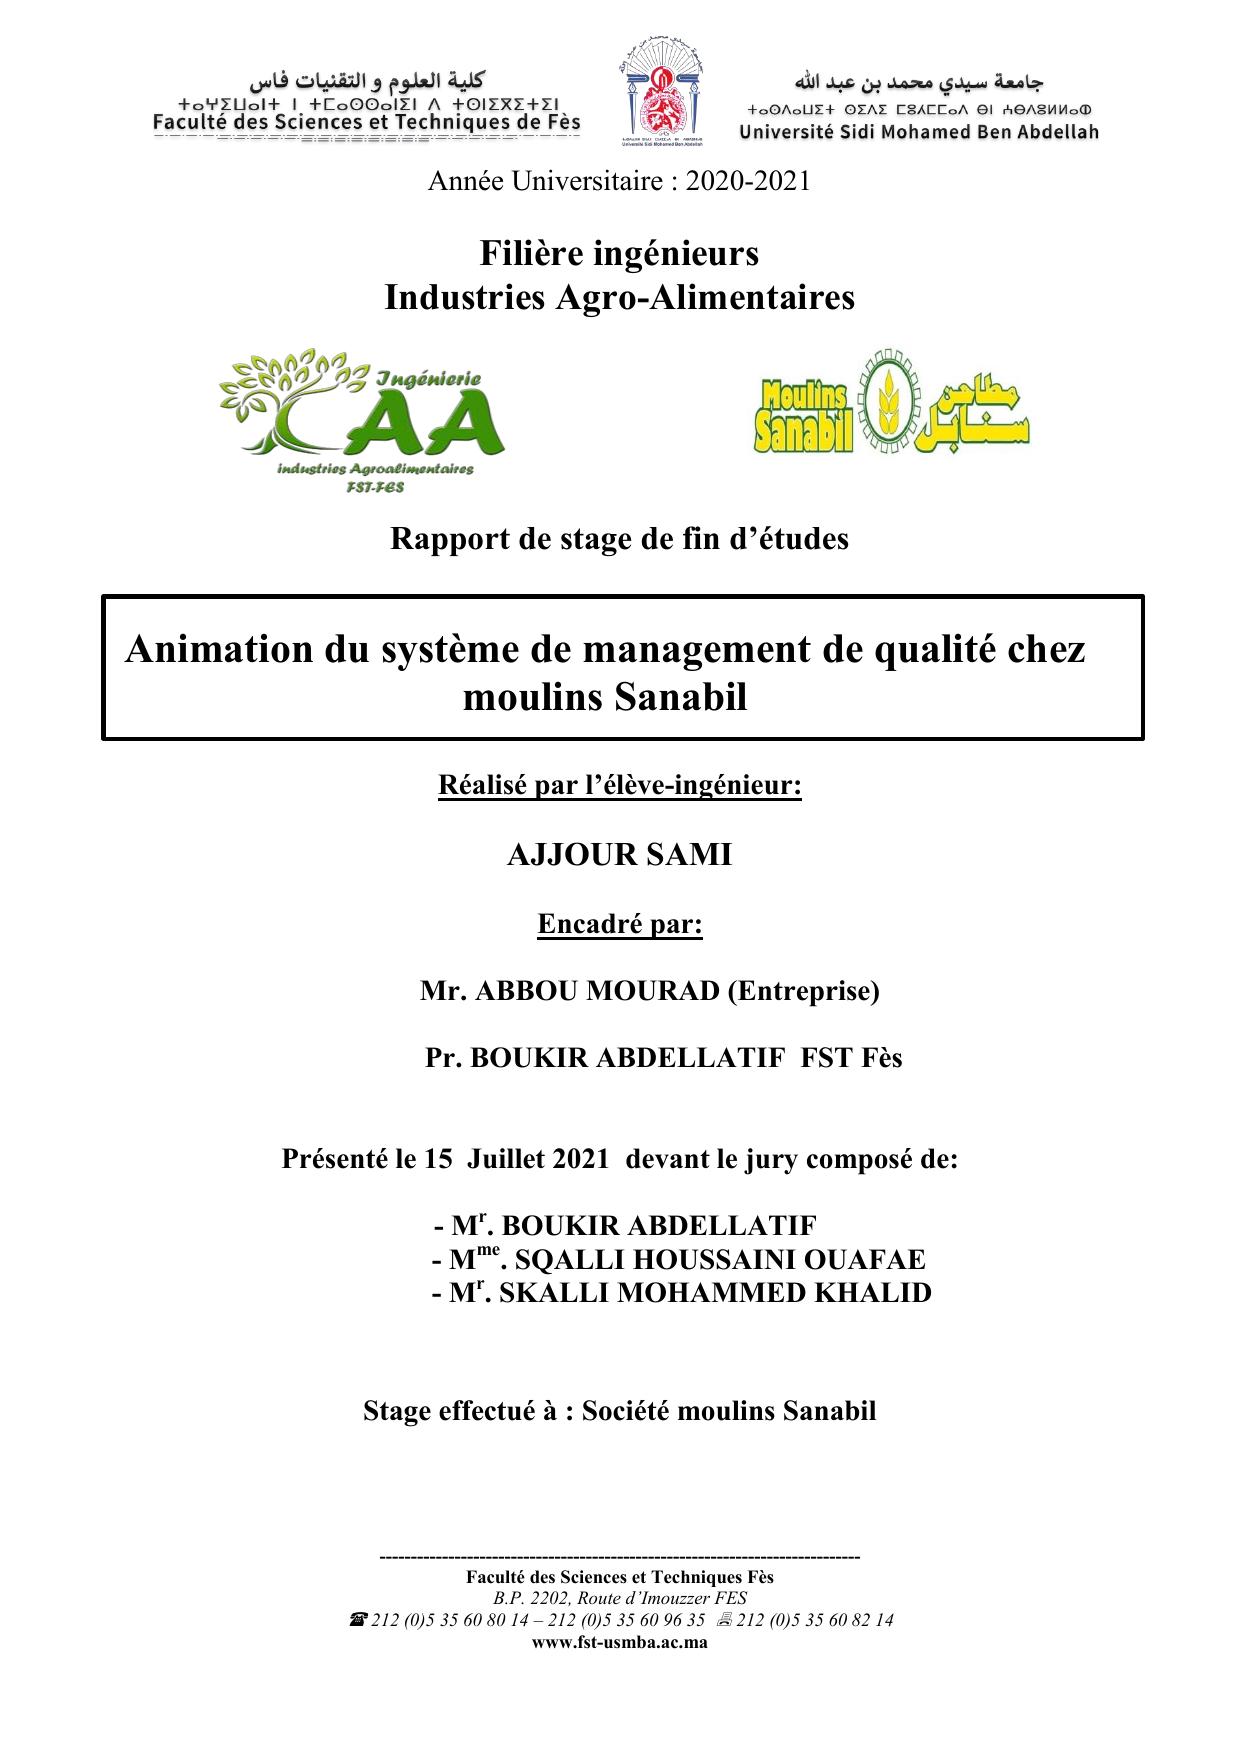 Animation du système de management de qualité chez moulins Sanabil